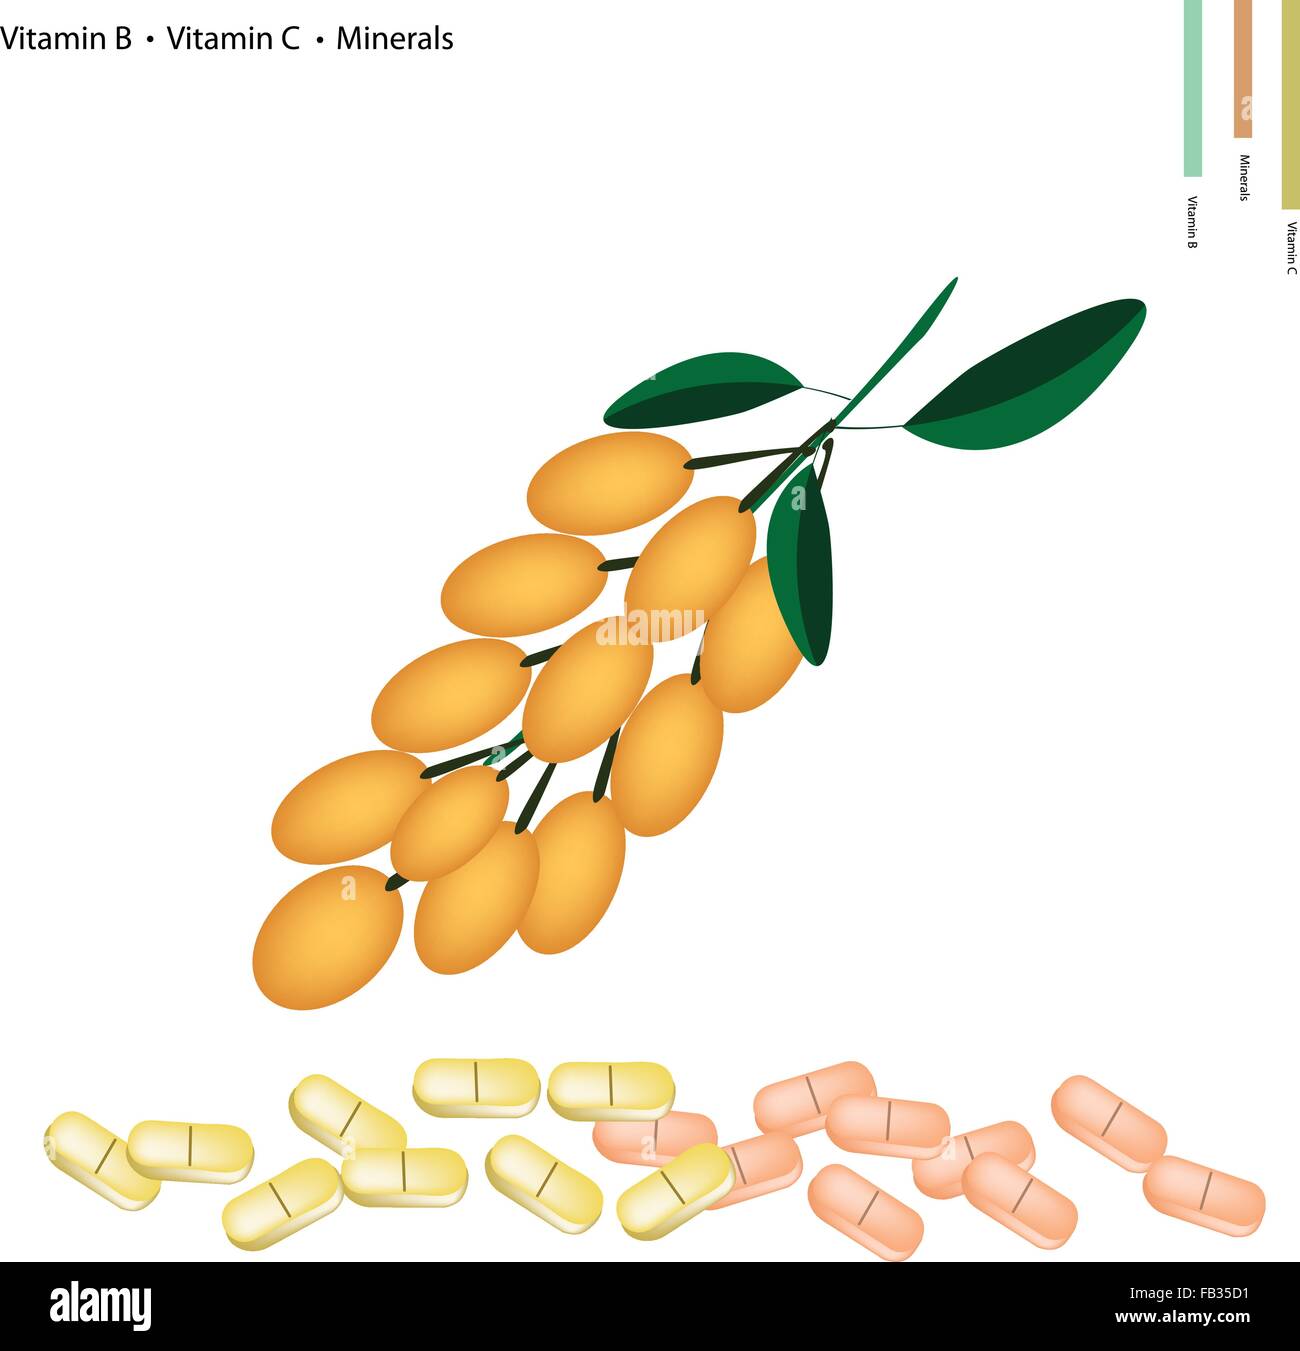 Medizinisches Konzept, Illustration der birmanischen Traube mit Vitamin B und Vitamin C und Mineralien Tablette, essentieller Nährstoff für das Leben. Stock Vektor